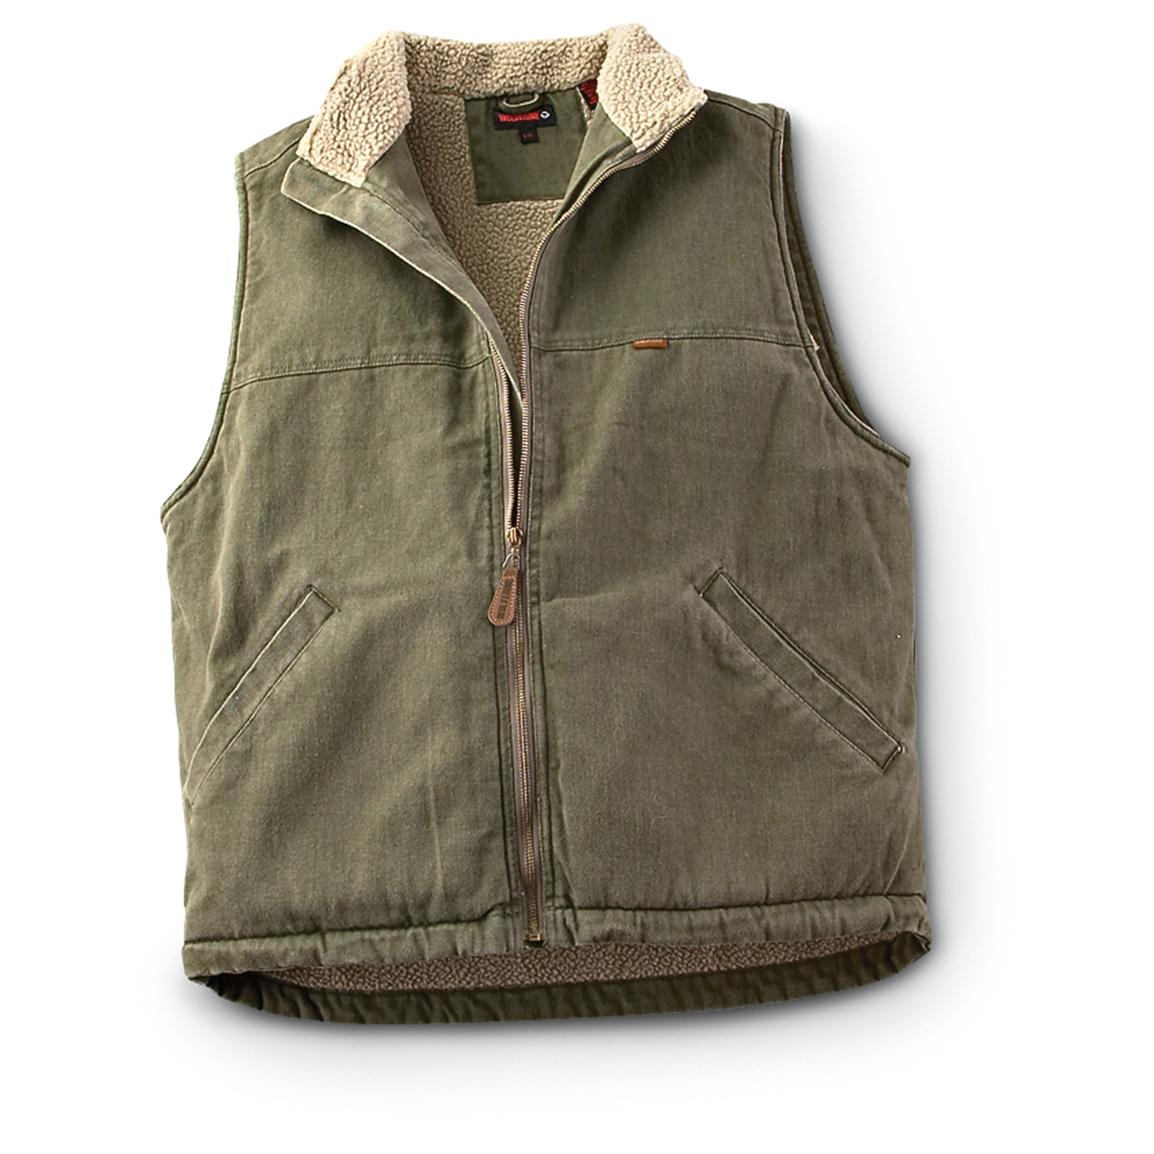 Wolverine® Fleece - lined Vest - 192308, Vests at Sportsman's Guide